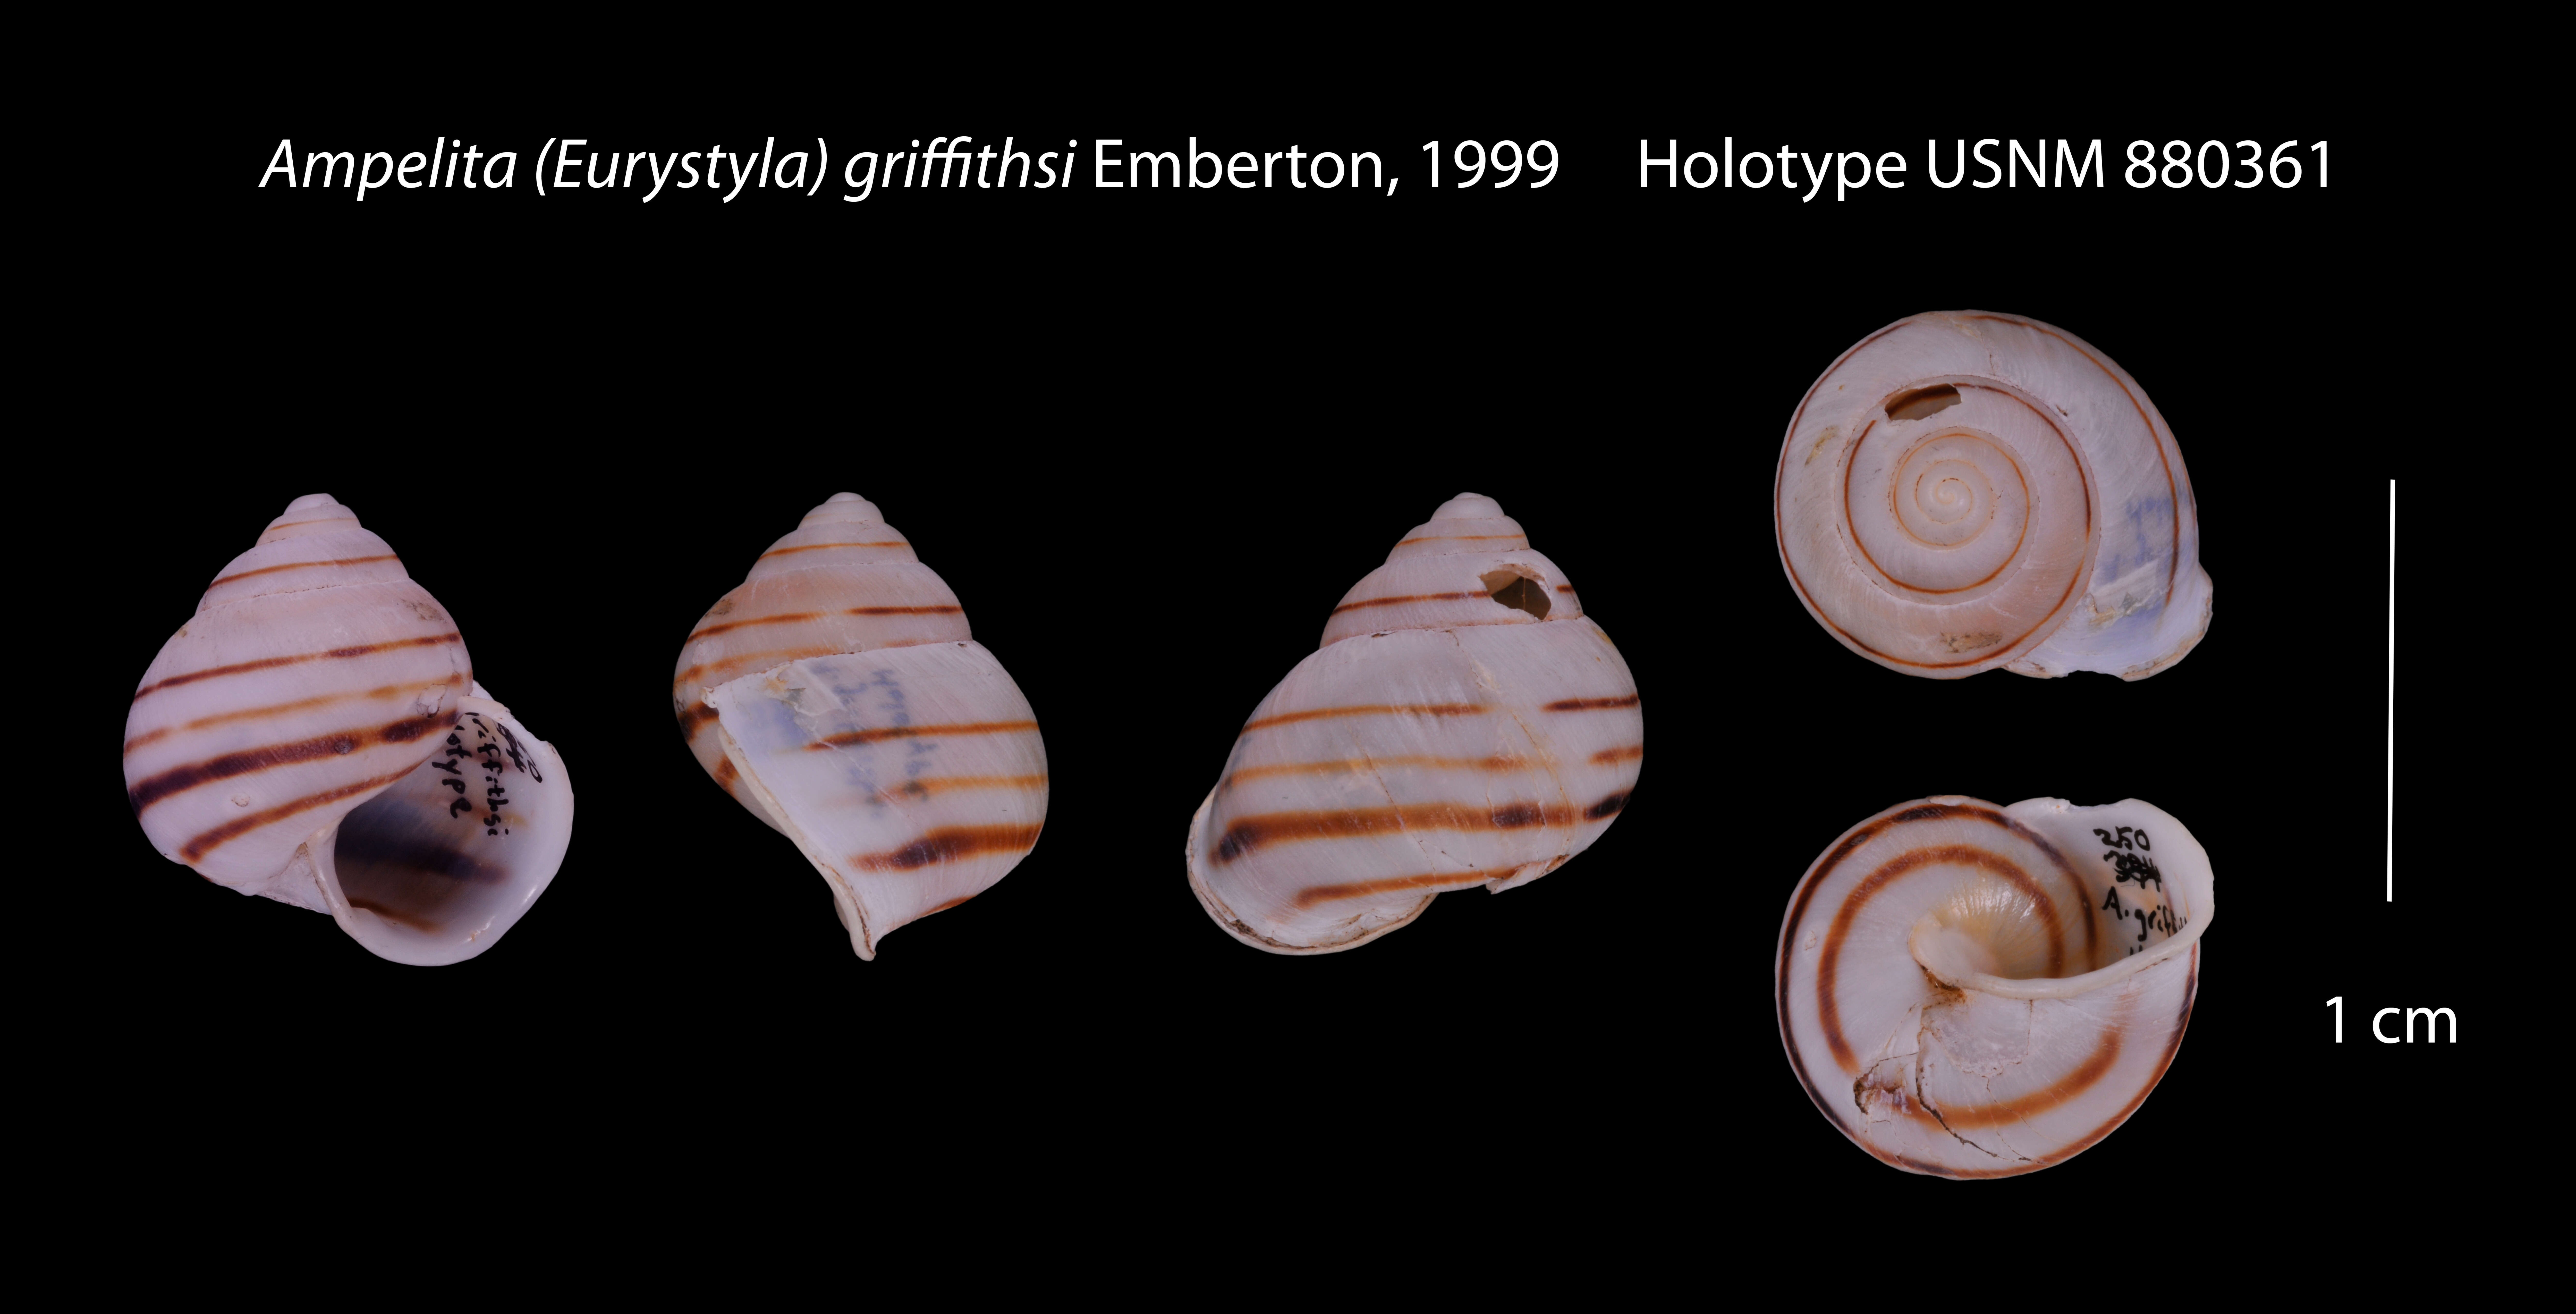 Image of Eurystyla griffithsi (Emberton 1999)